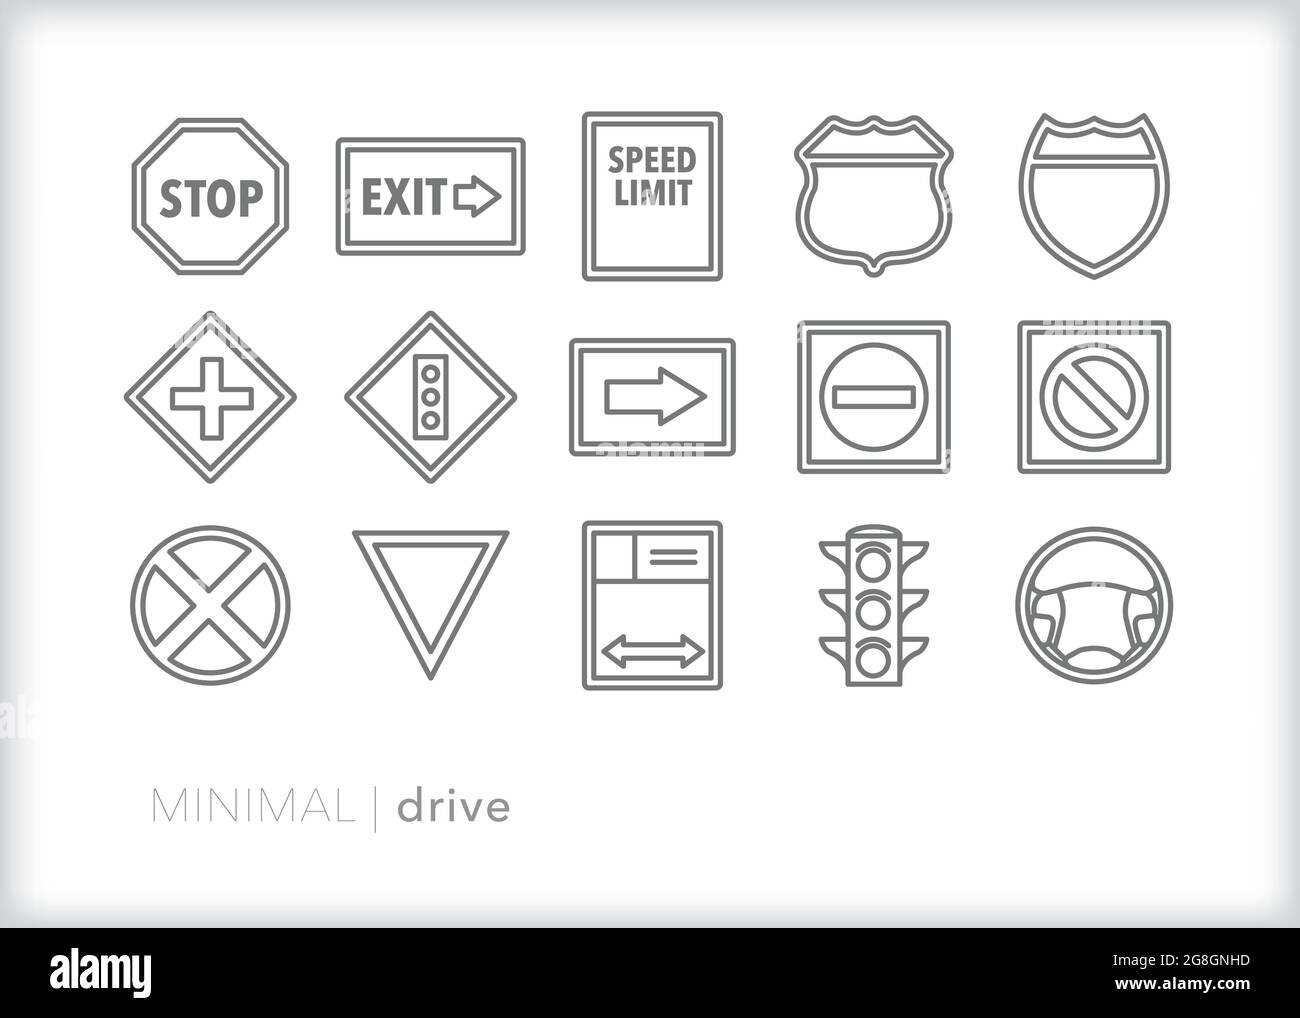 Serie di icone della linea guida delle indicazioni stradali e autostradali per le regole della strada Illustrazione Vettoriale